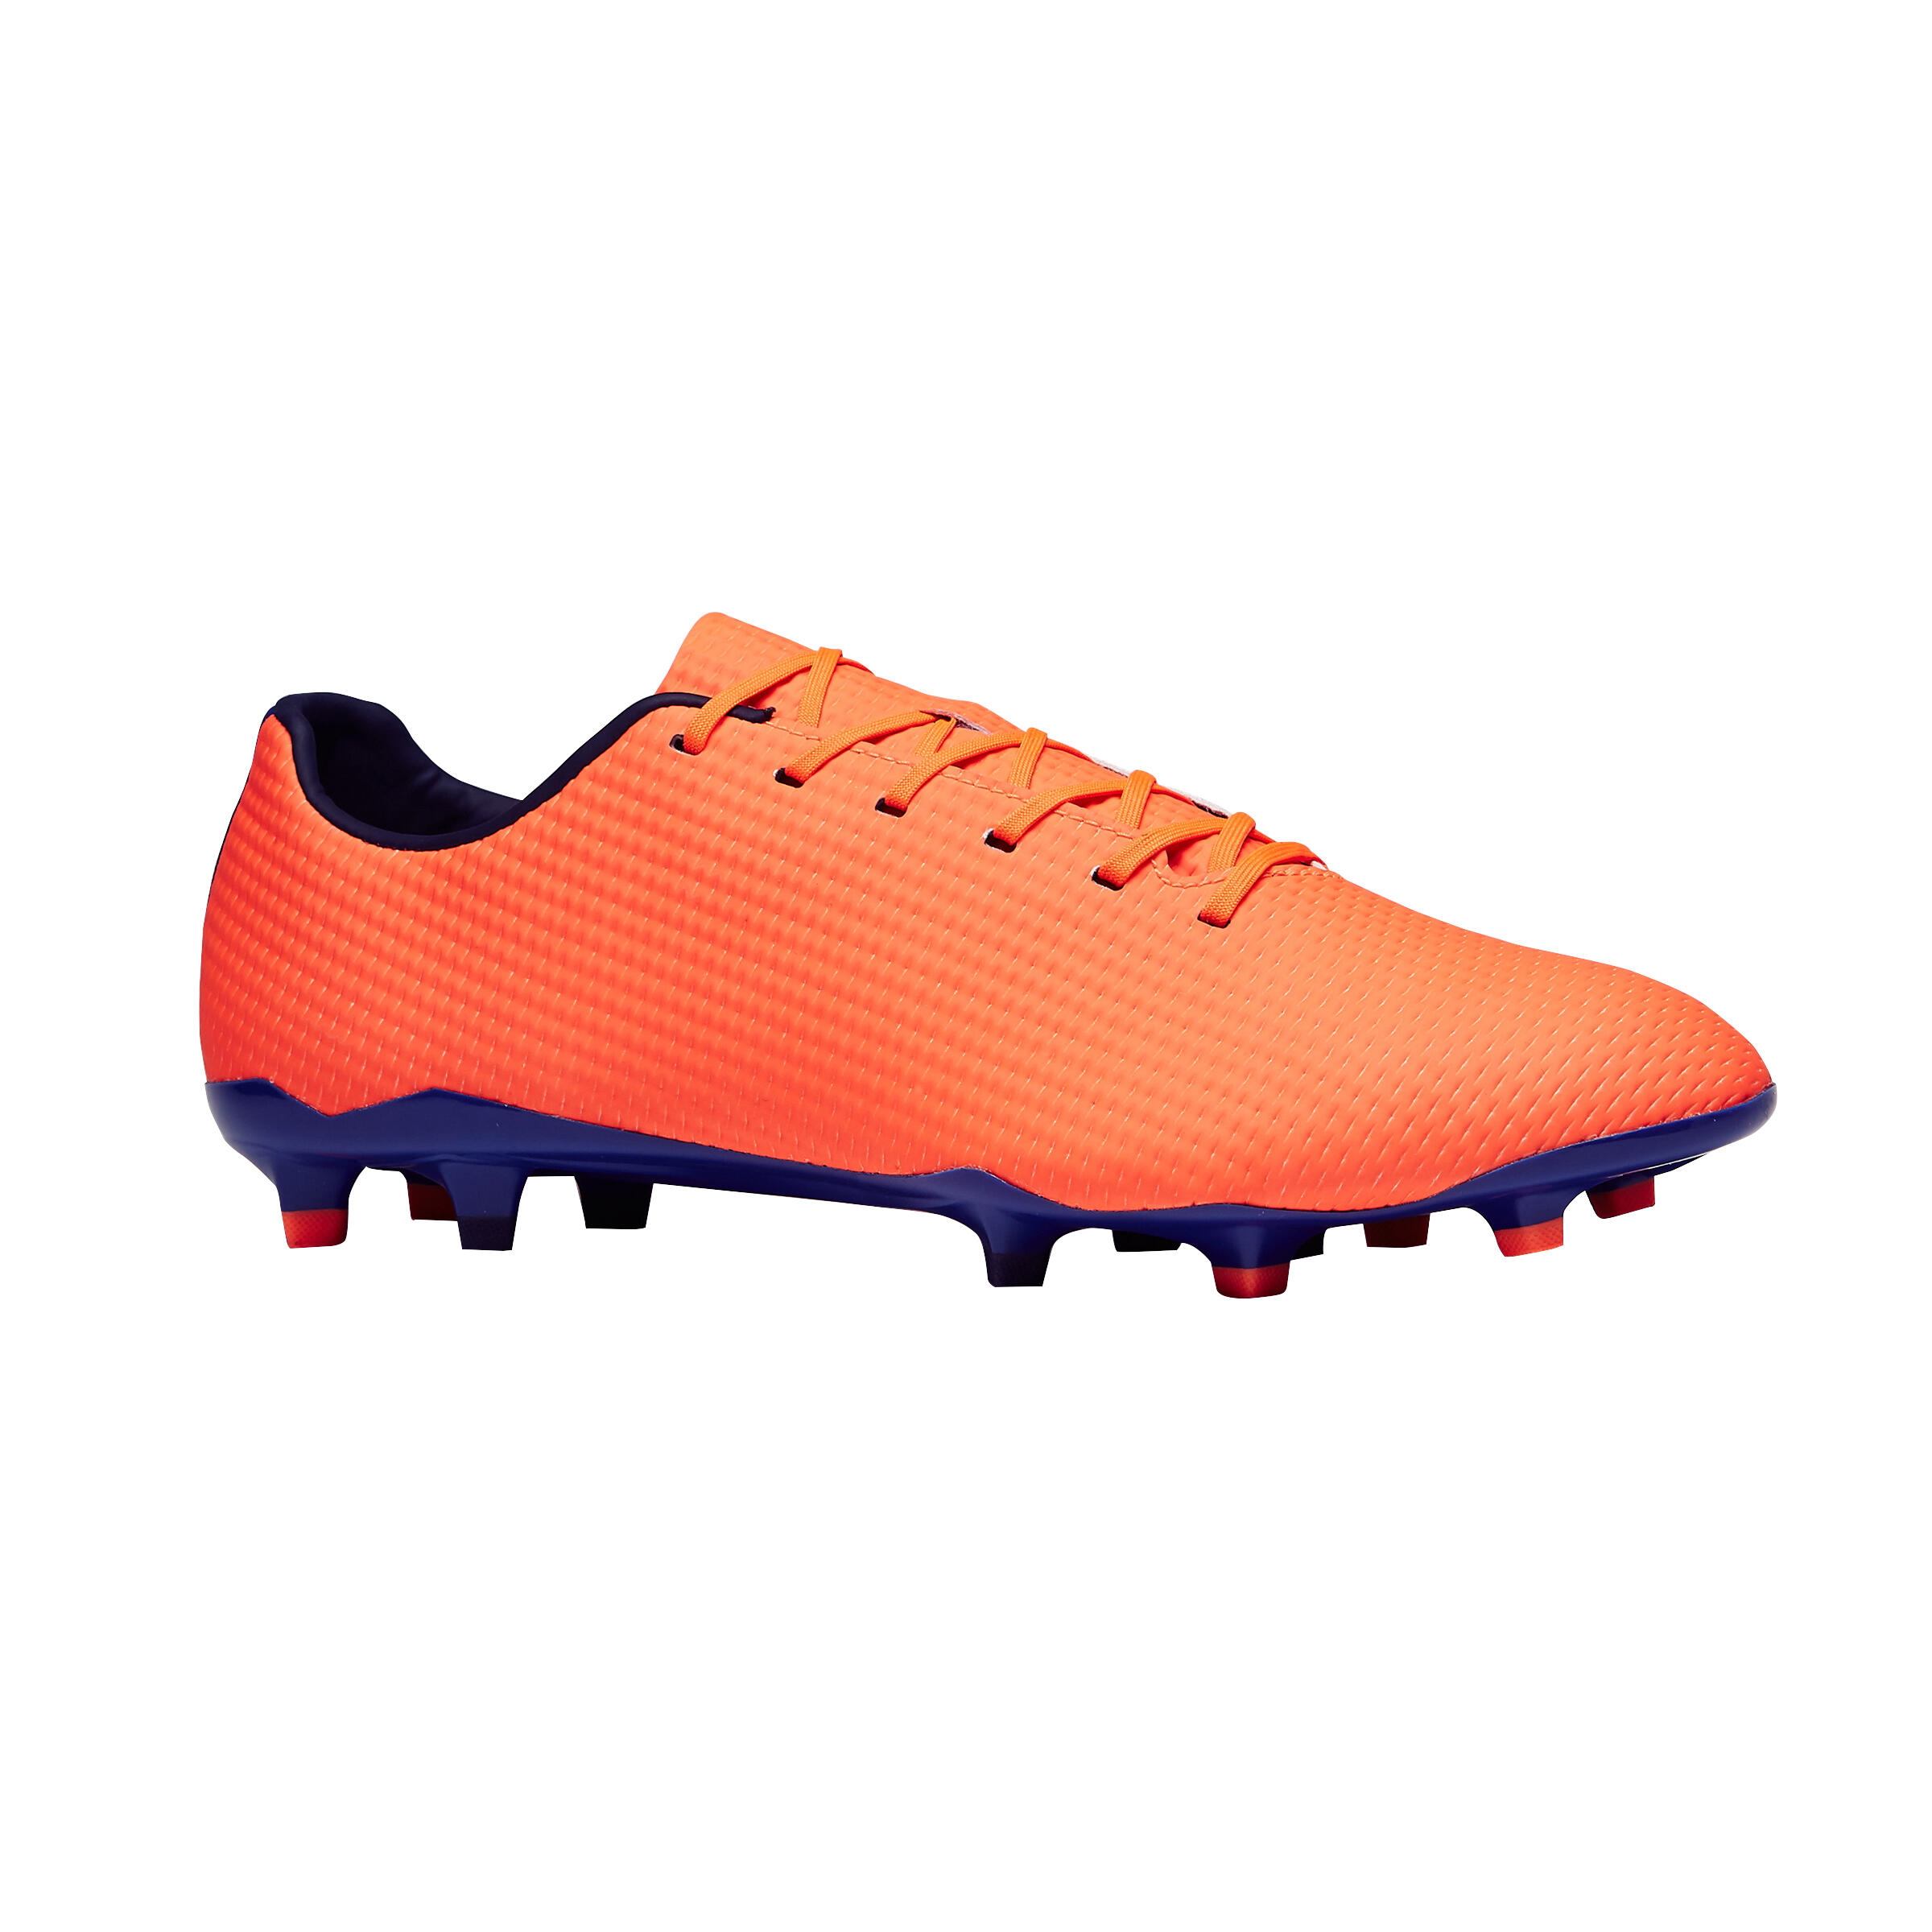 Mens Football Boots Clr 900 Fg Orangeblue